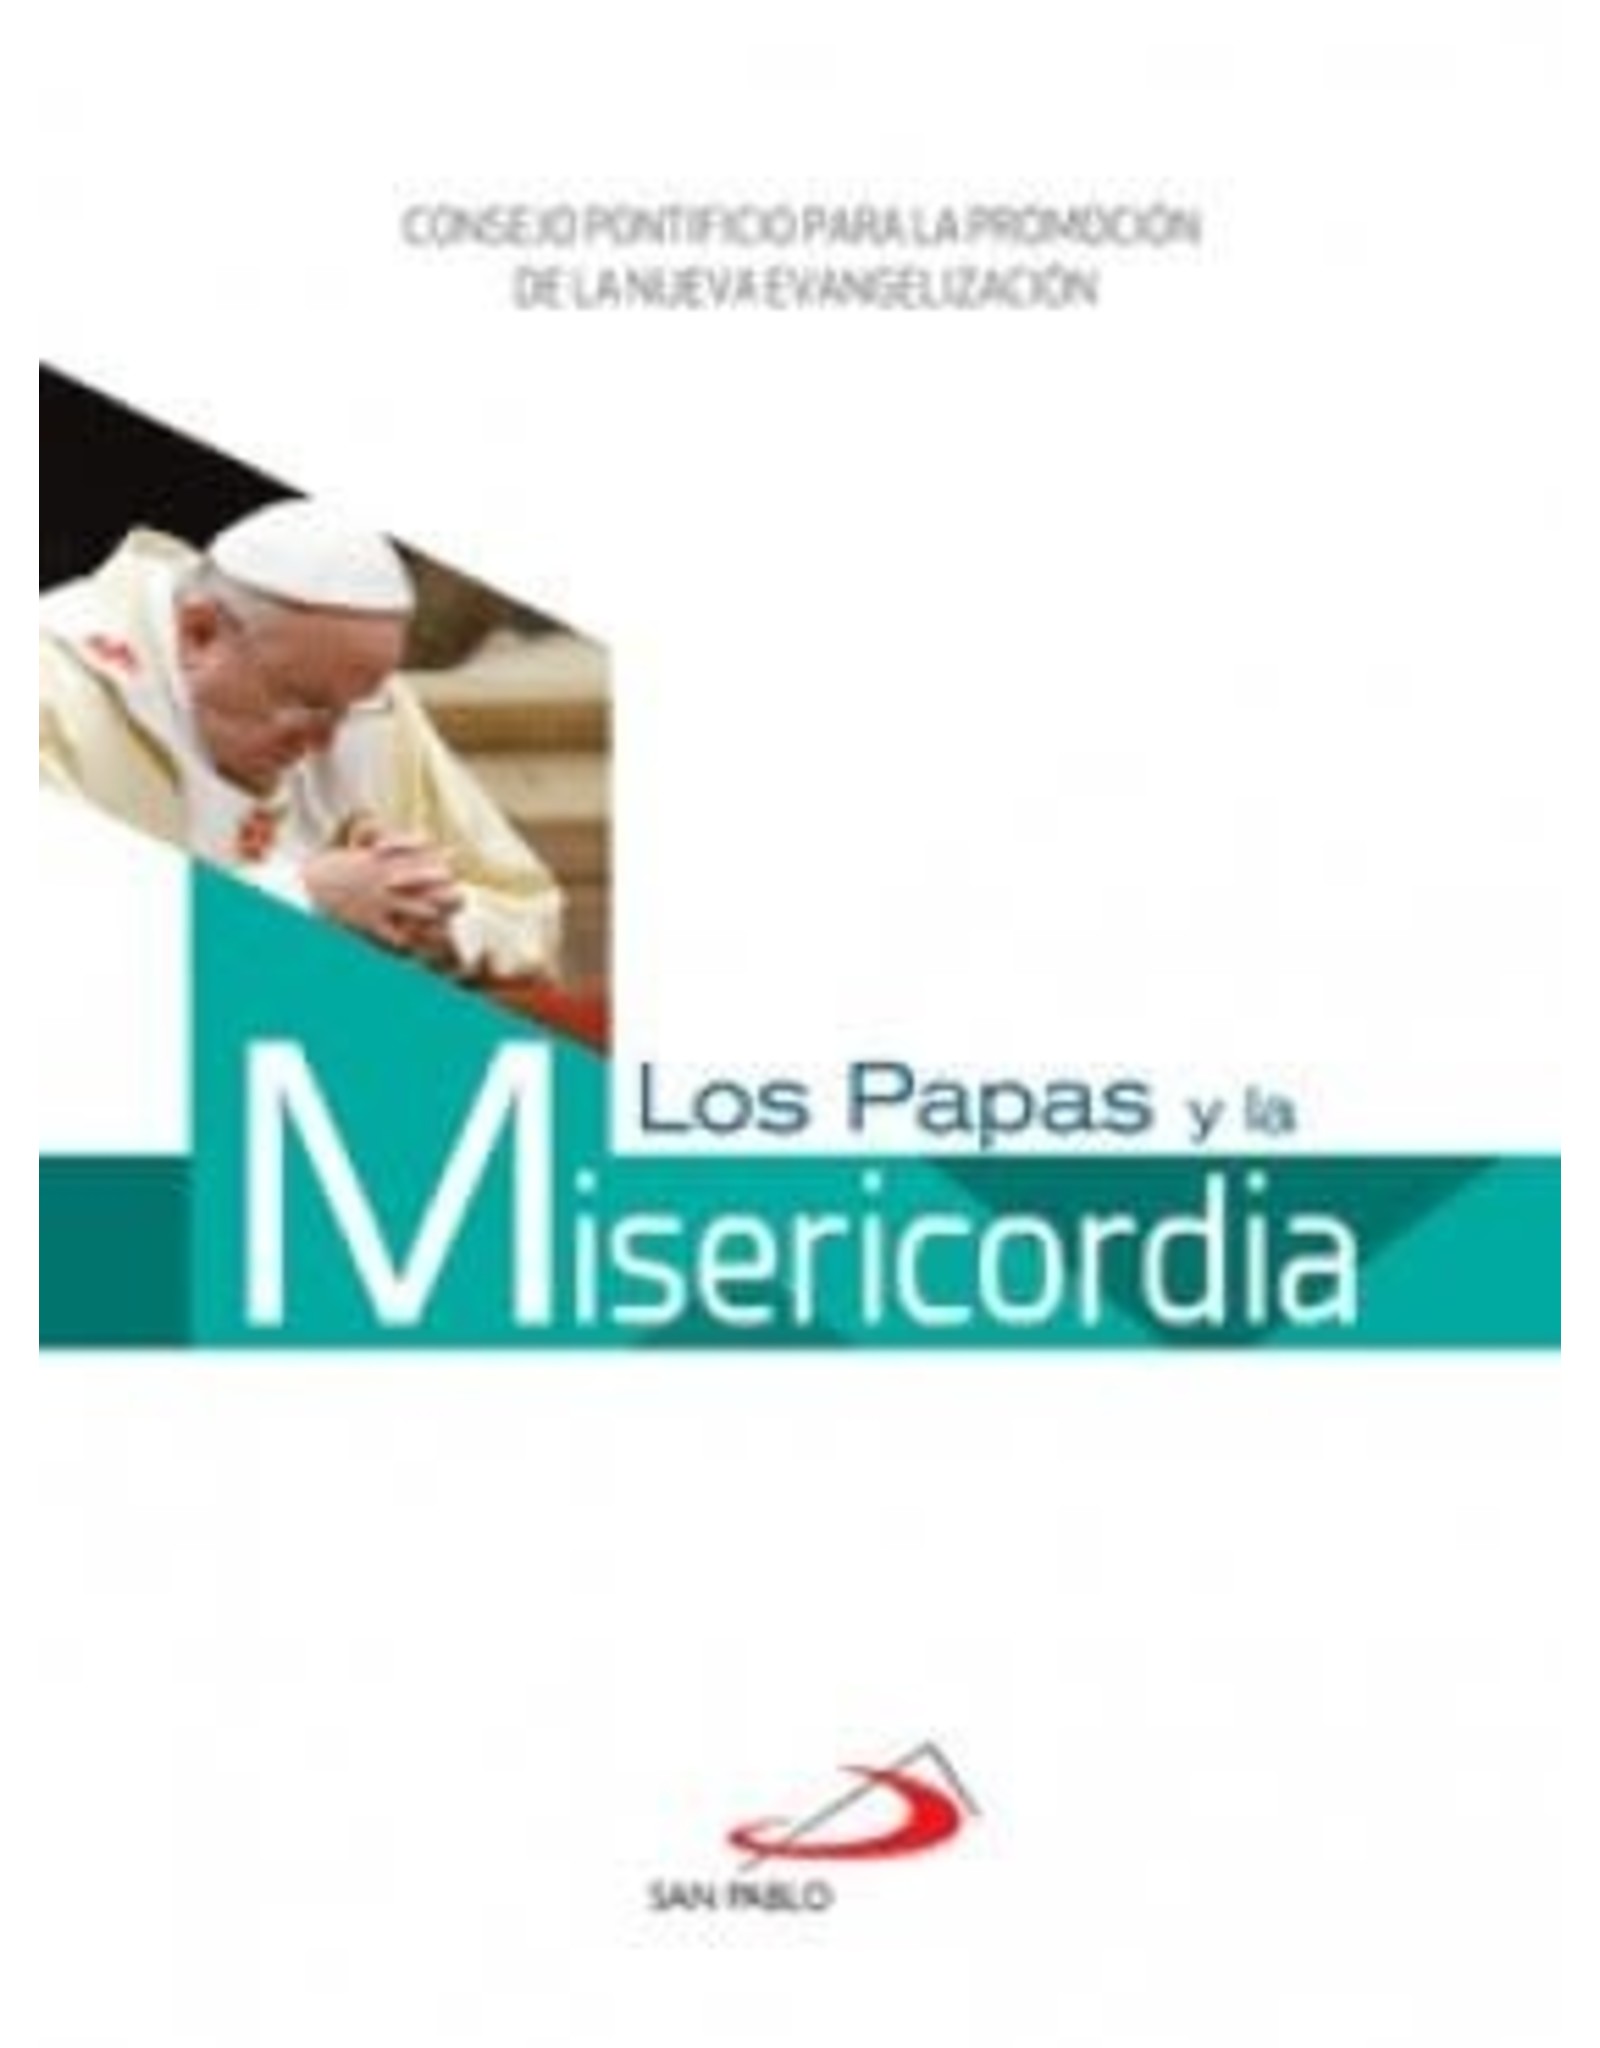 Papas y la Misericordia